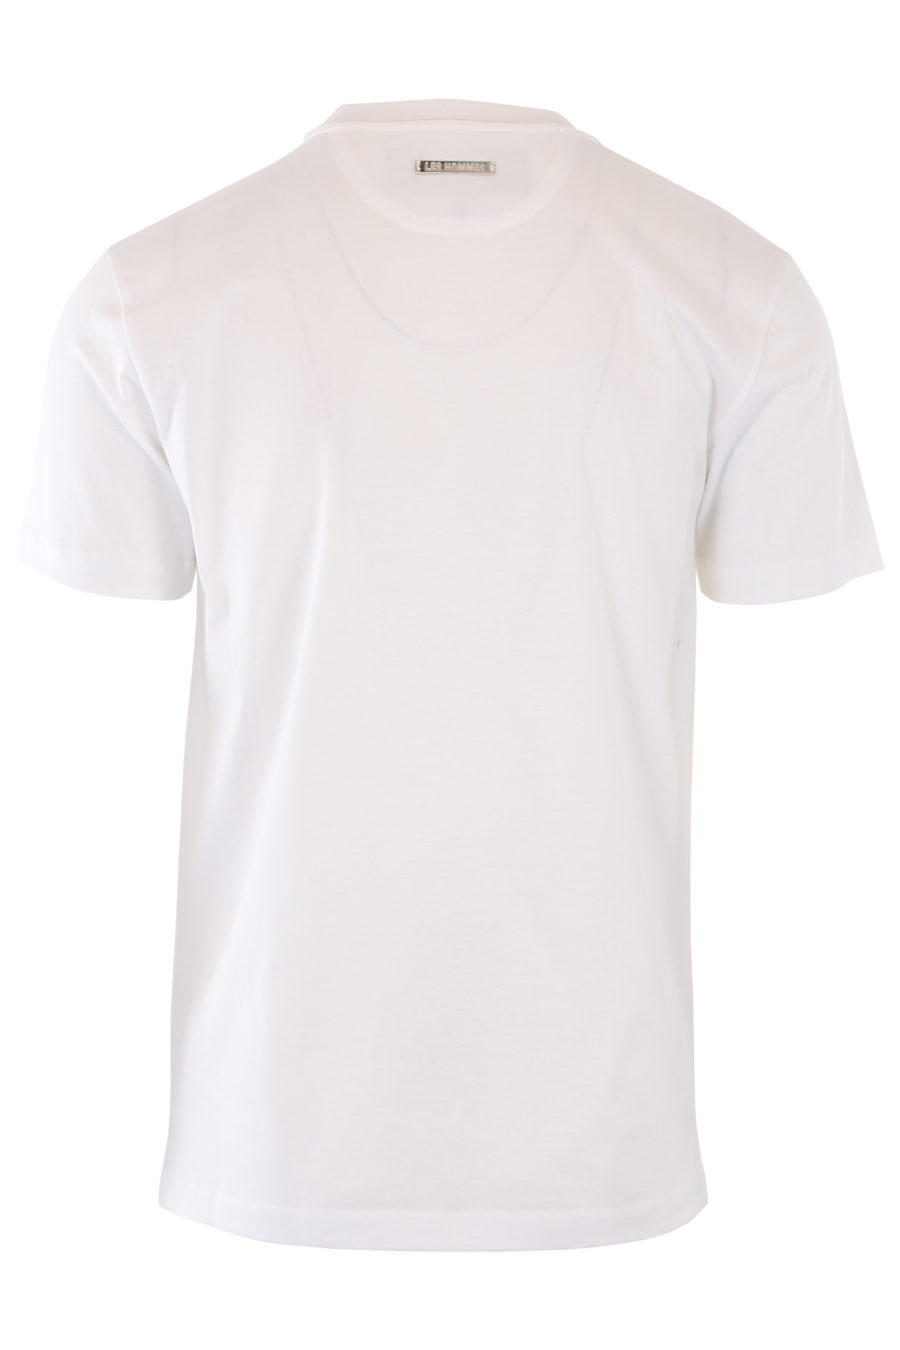 Camiseta blanca con logo gráfico negro - IMG 1099